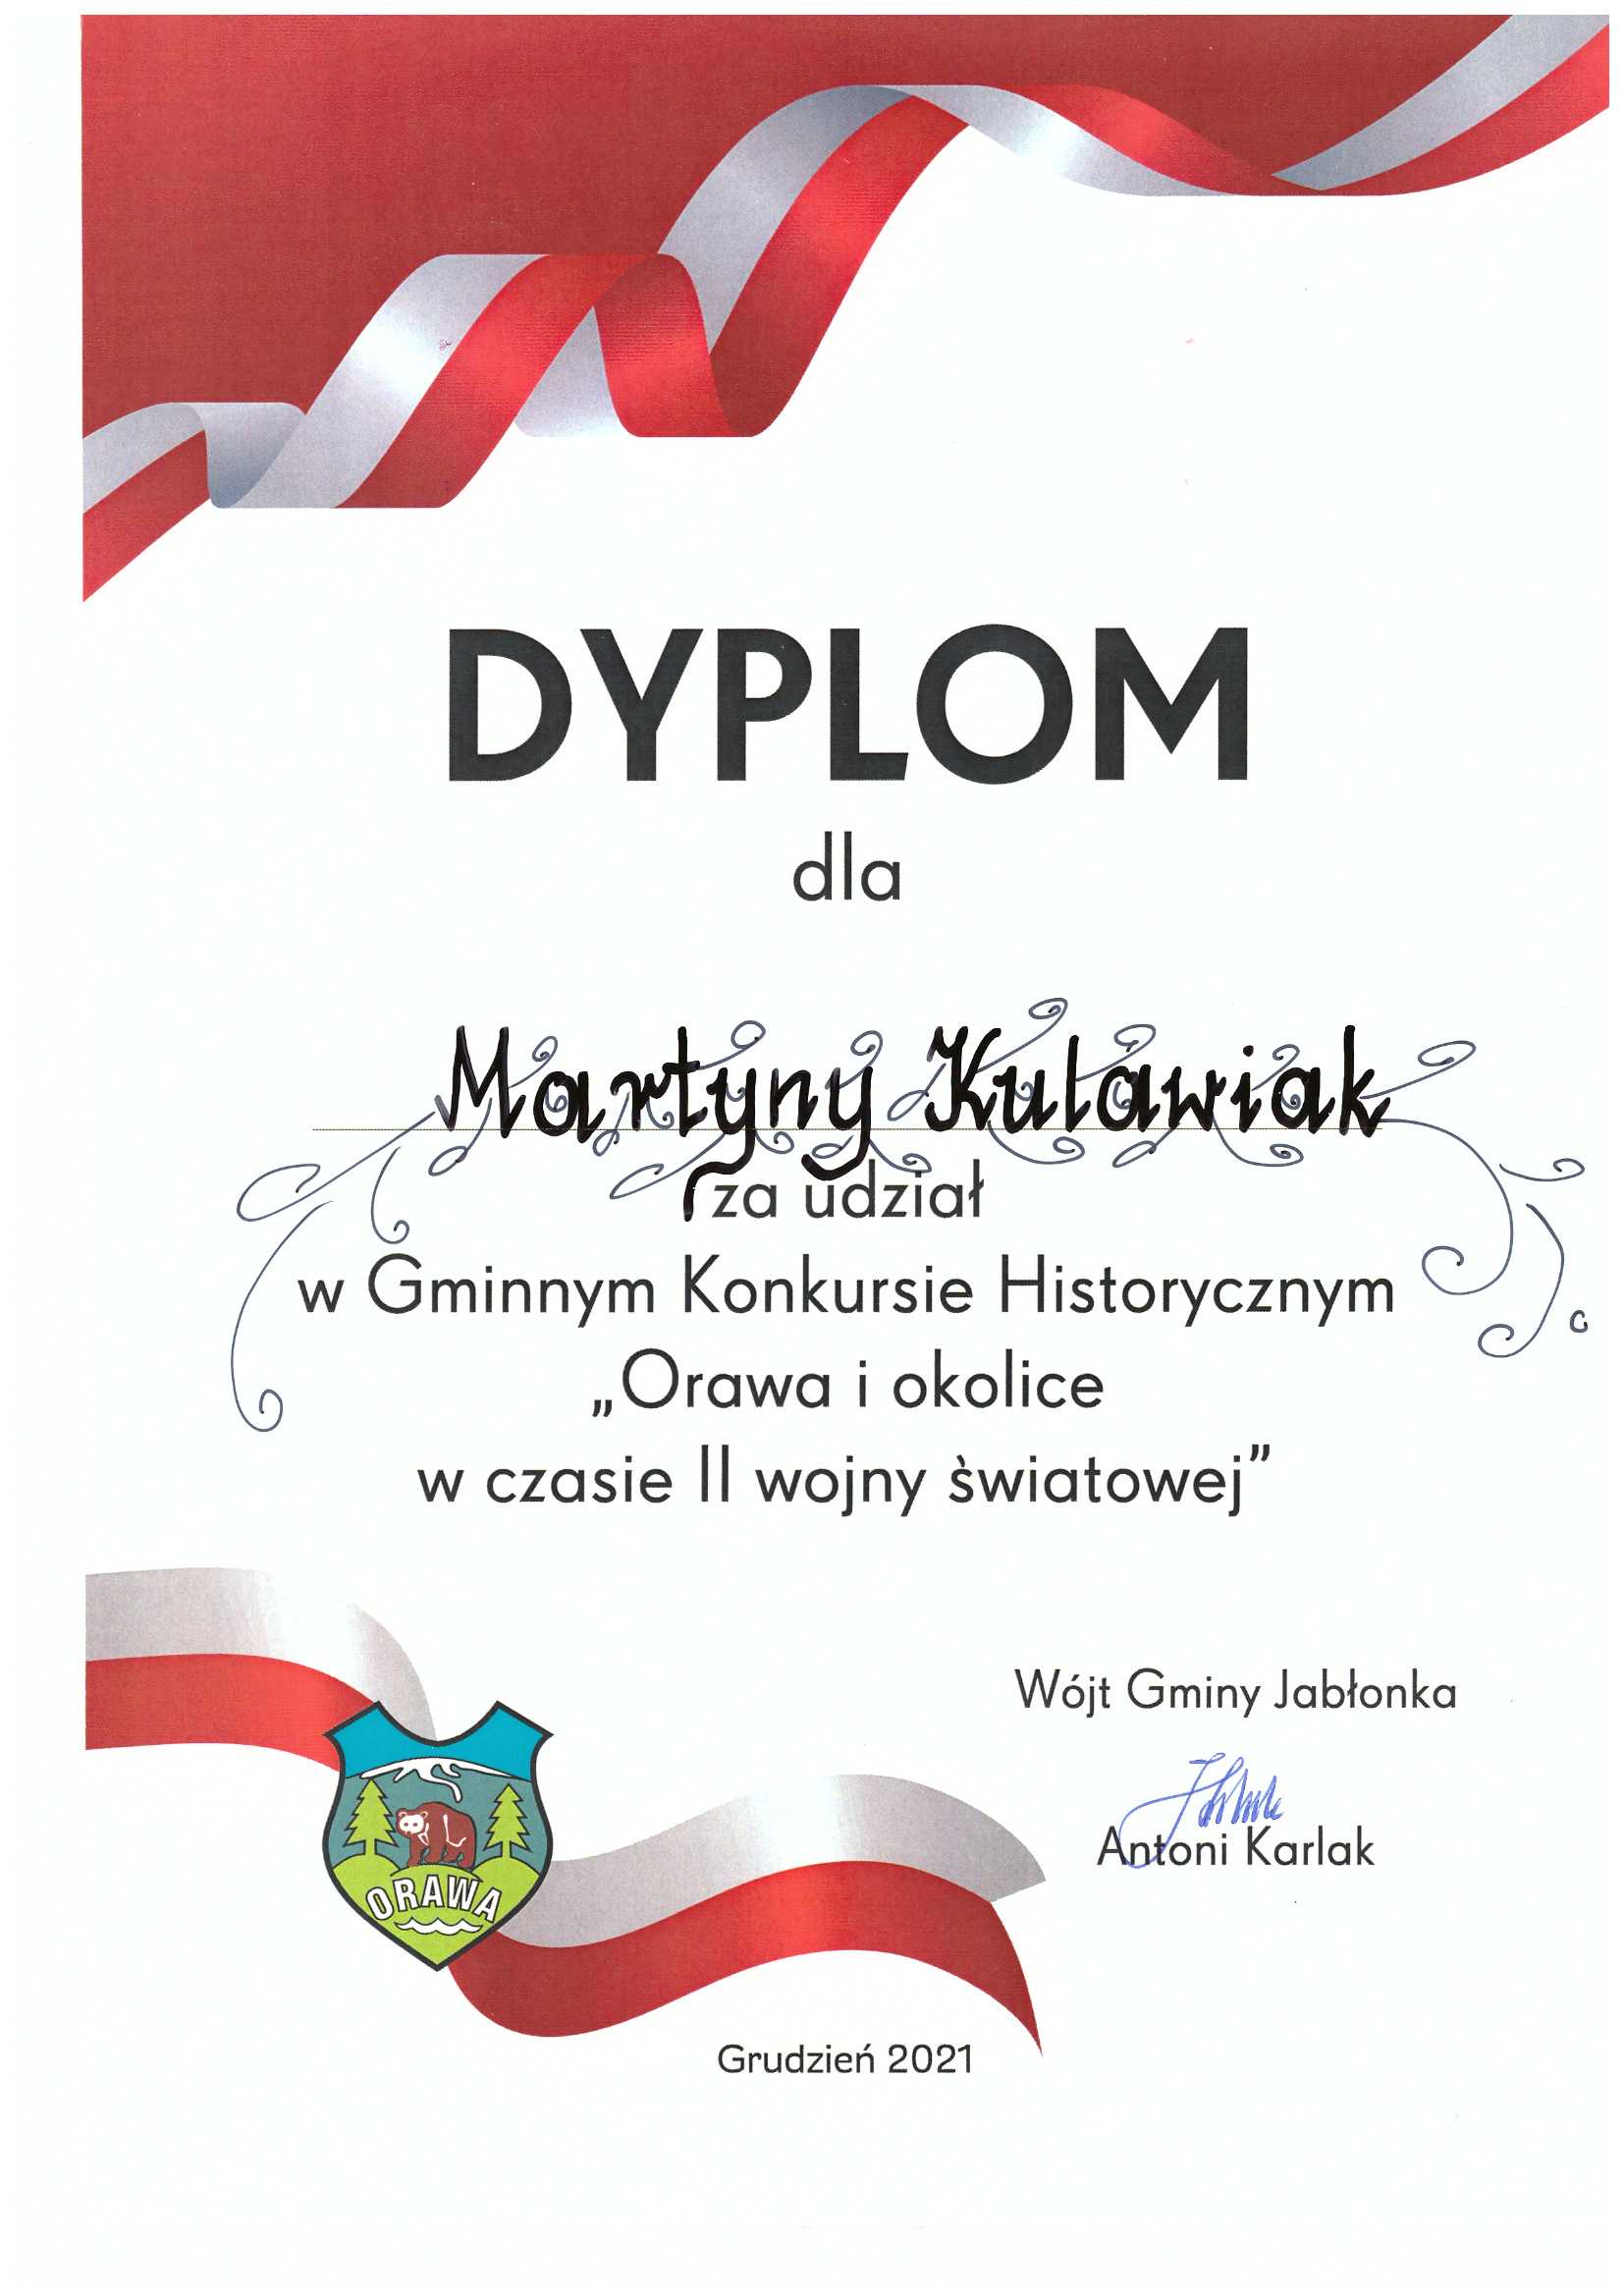 Dyplom dla Martyny Kulawiak za udział w Gminnym Konkursie Historycznym "Orawa i okolice w czasie II wojny światowej"